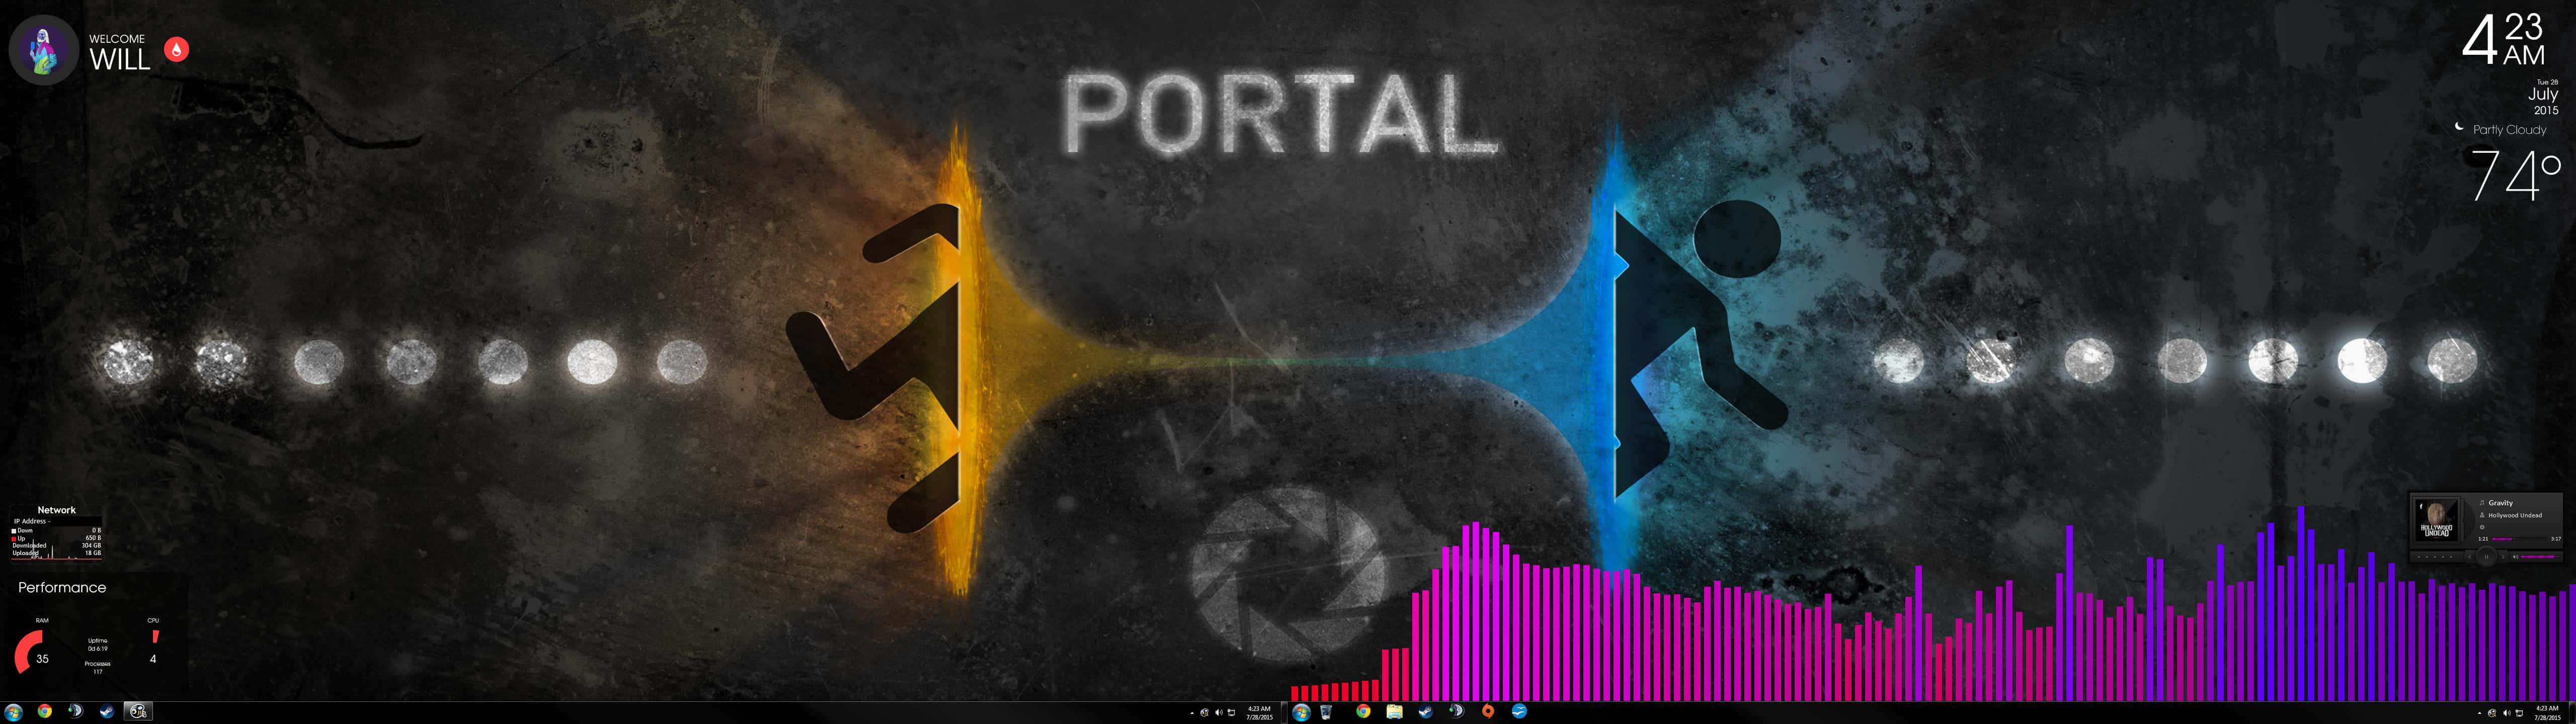 En skærm, der viser ordet portal. Wallpaper